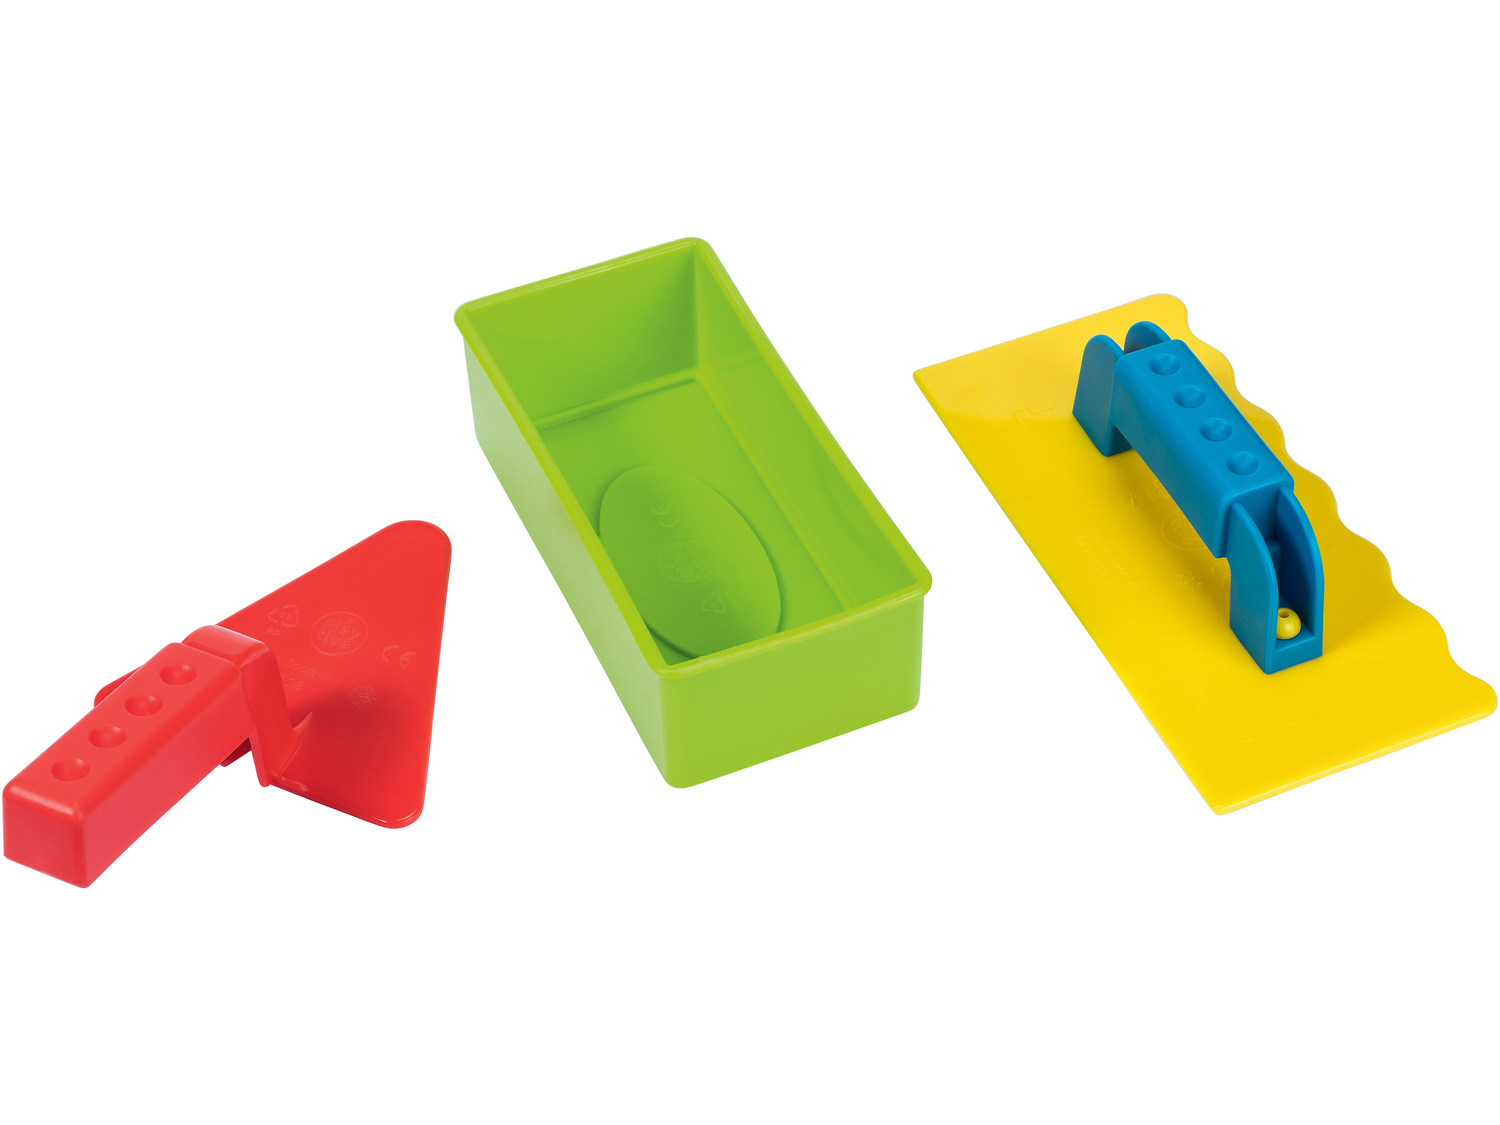 Zabawki do piaskownicy Playtive Junior, cena 12,99 PLN  
7 rodzajów
Opis

- 1